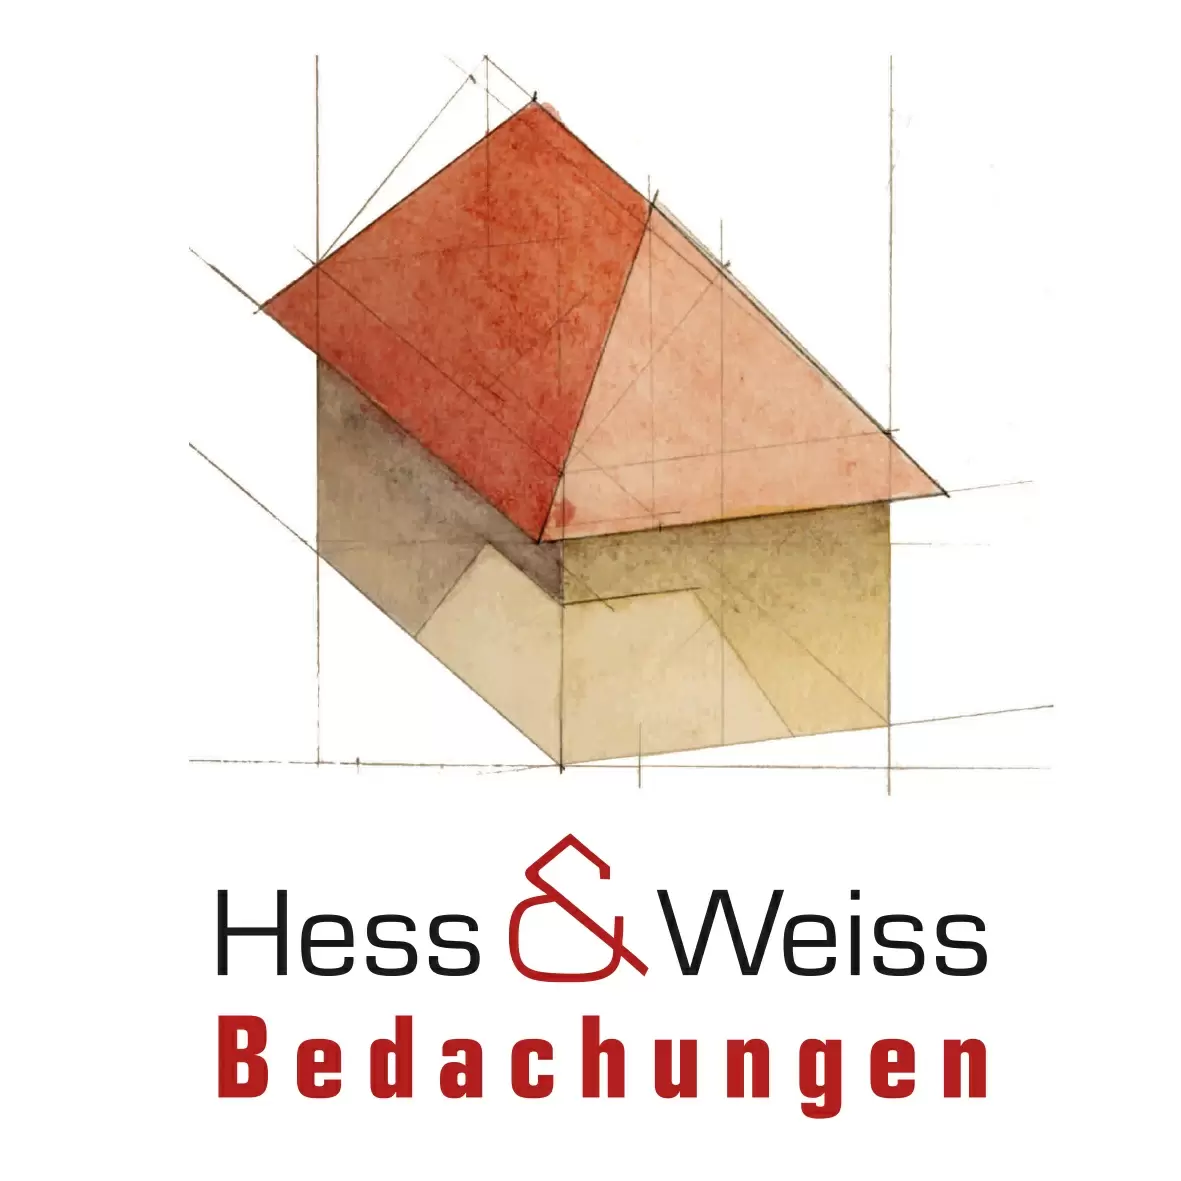 Hess & Weiss Bedachungen